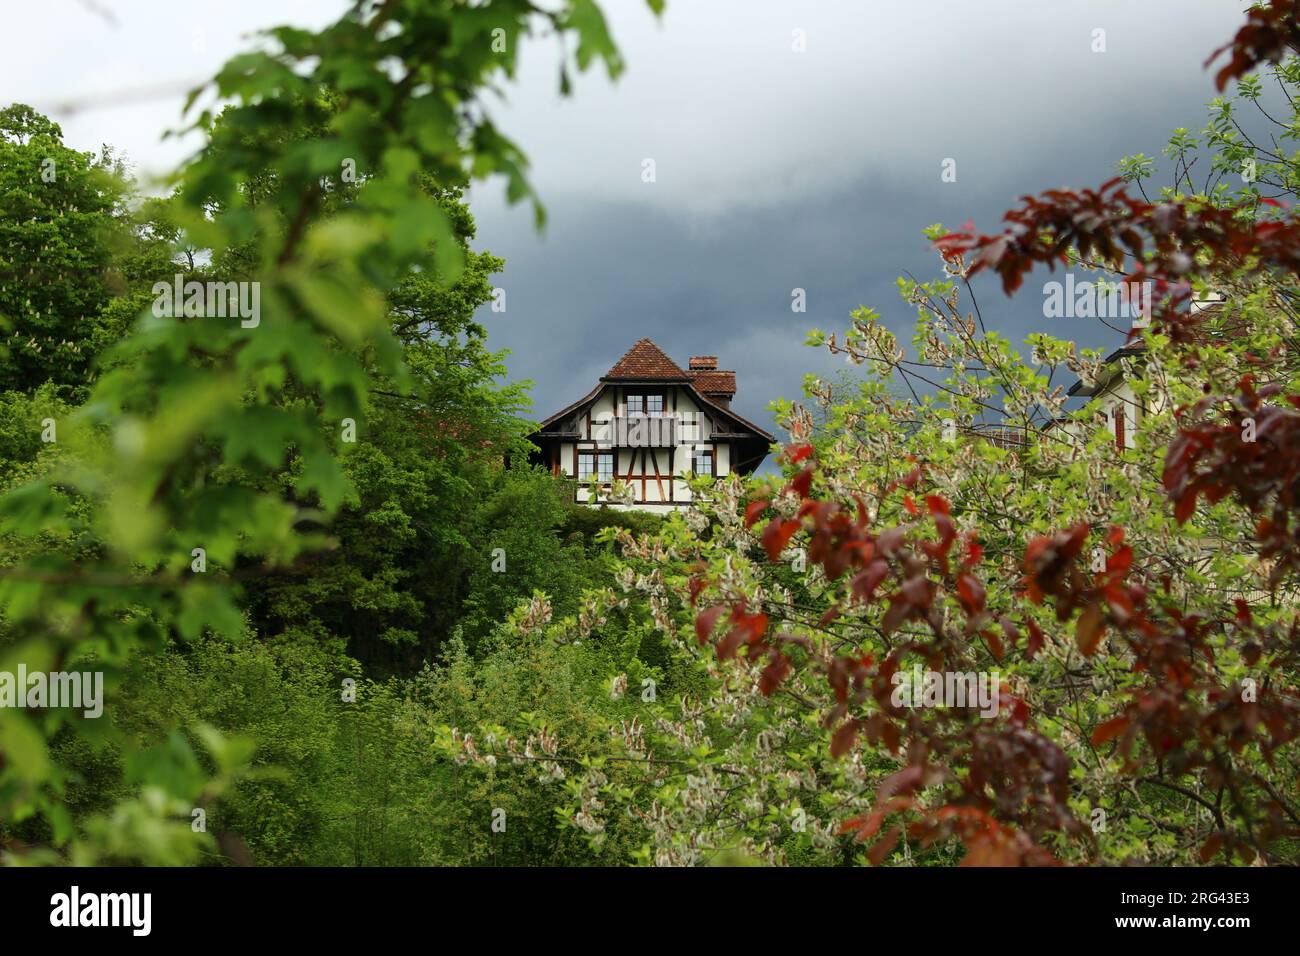 Typisches Schweizer Chalet-Design, eingebettet in den Wald mit nebligen Wolken dahinter. Konzept für Versteck, Flucht, Haus im Wald, Mt Living Stockfoto